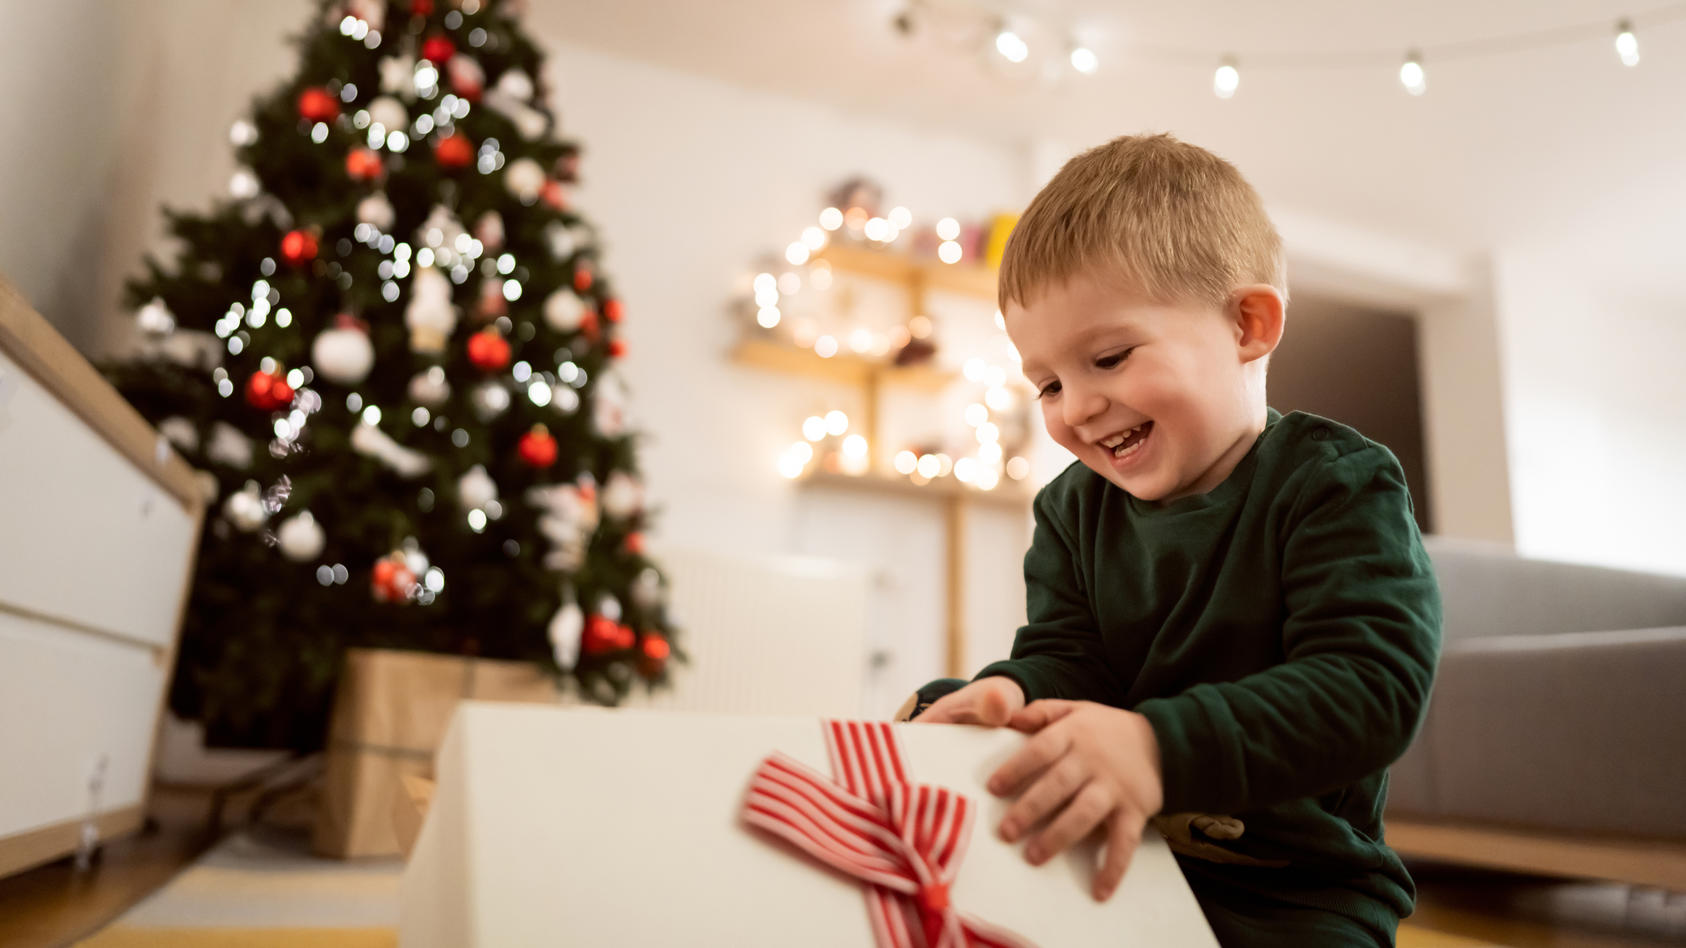 Weihnachtsgeschenk-Ideen für Kleinkinder bei Amazon, Saturn und Ebay